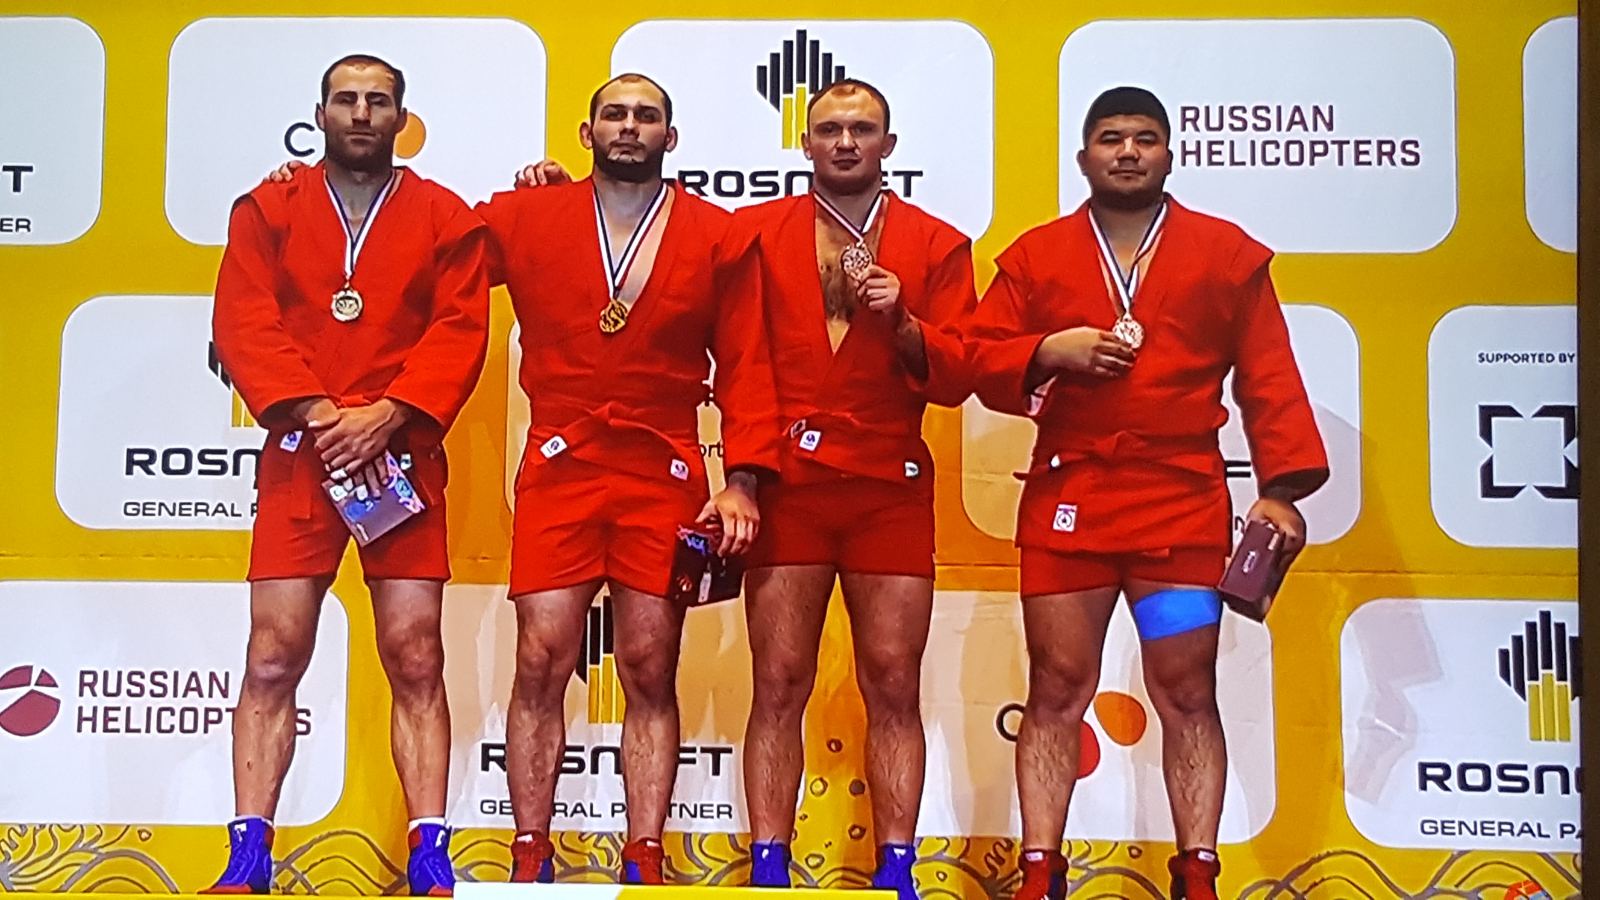 Спасатели из Минской области стали бронзовыми призерами чемпионата мира по самбо (боевое самбо)